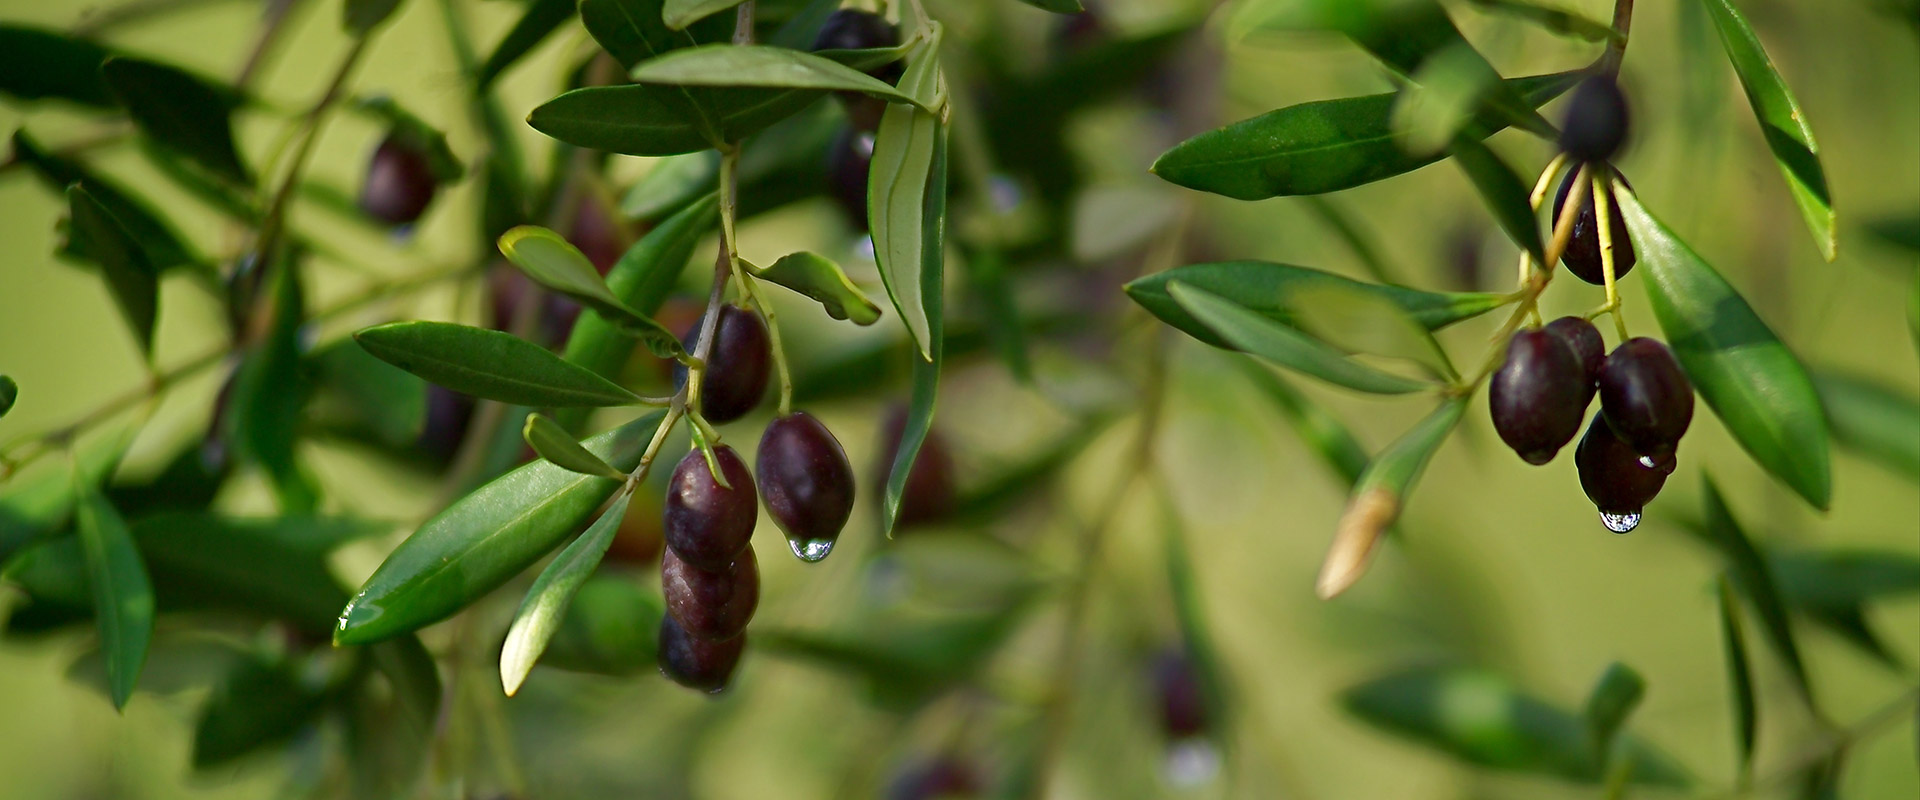 pianta di olive nere 